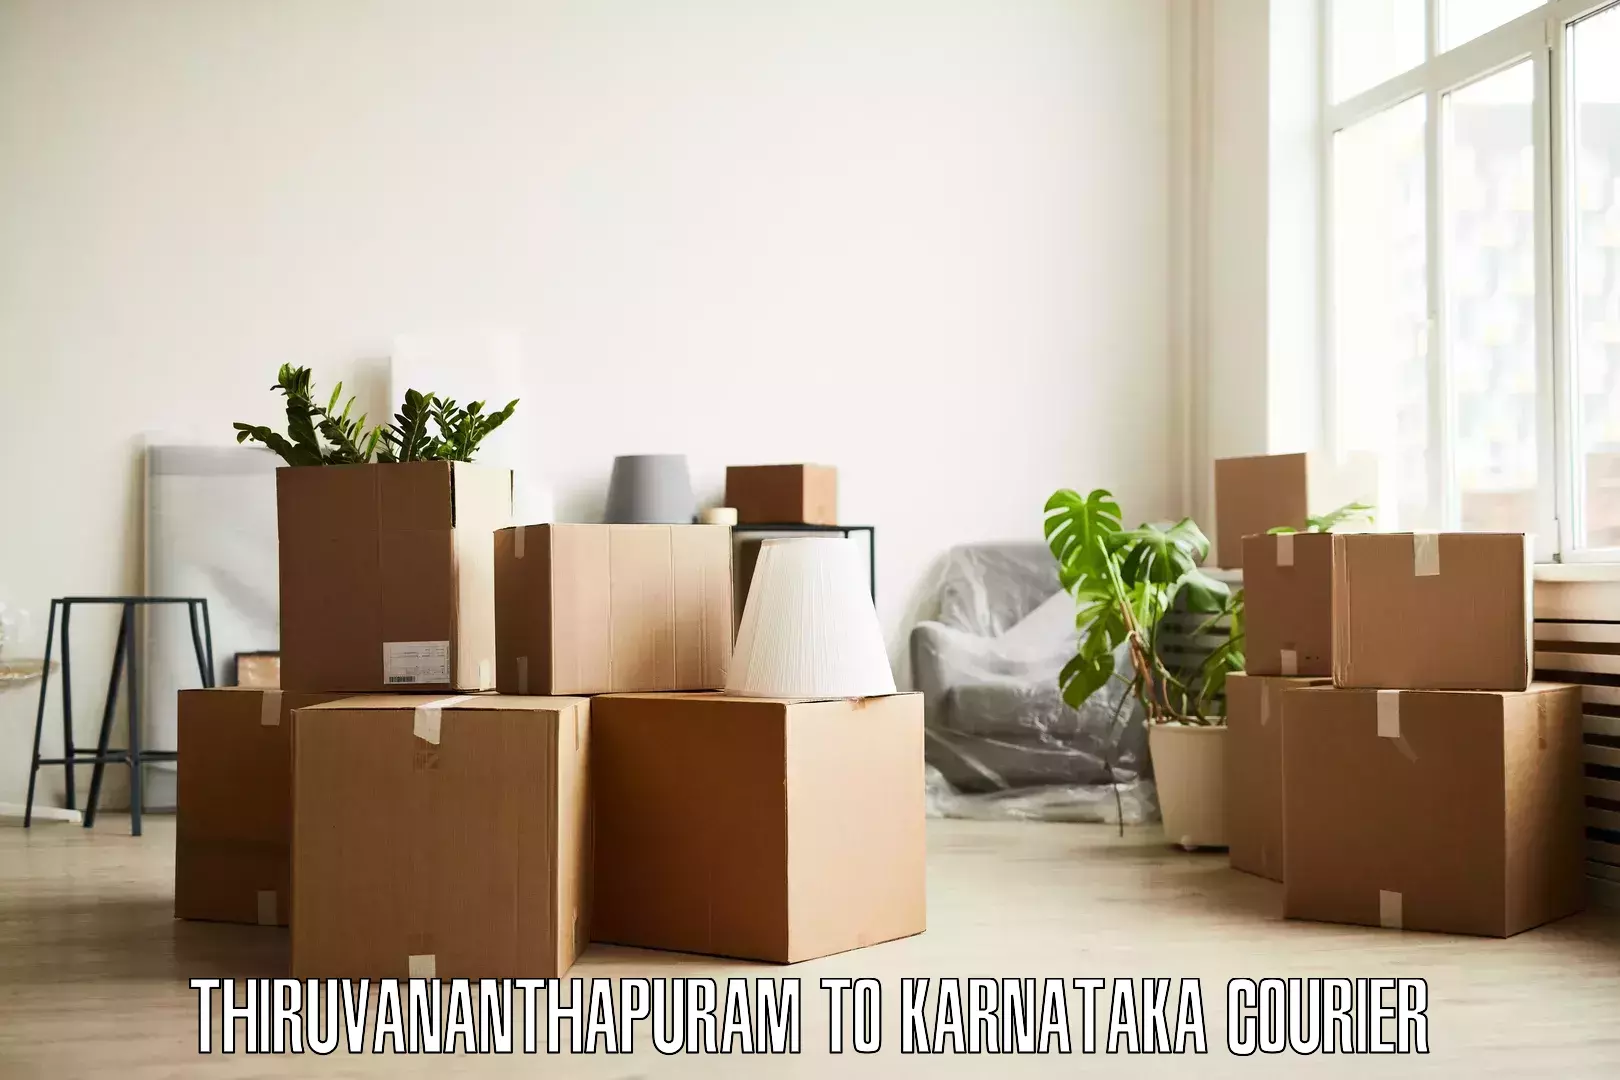 Professional furniture movers Thiruvananthapuram to Piriyapatna